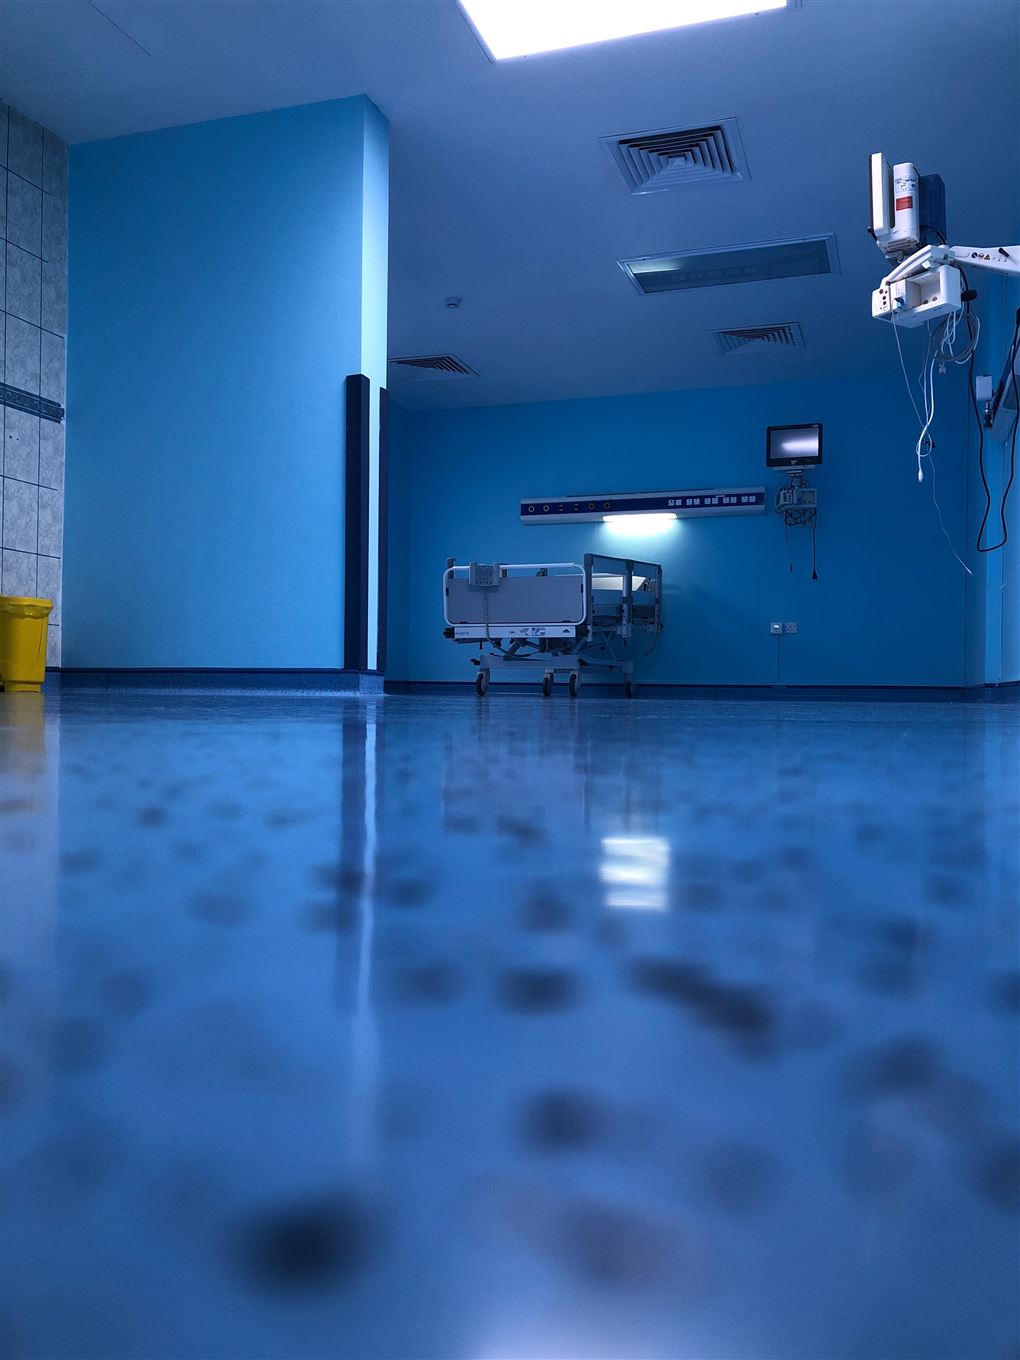 En tom hospitalsstue lyst op af blåt nattelys